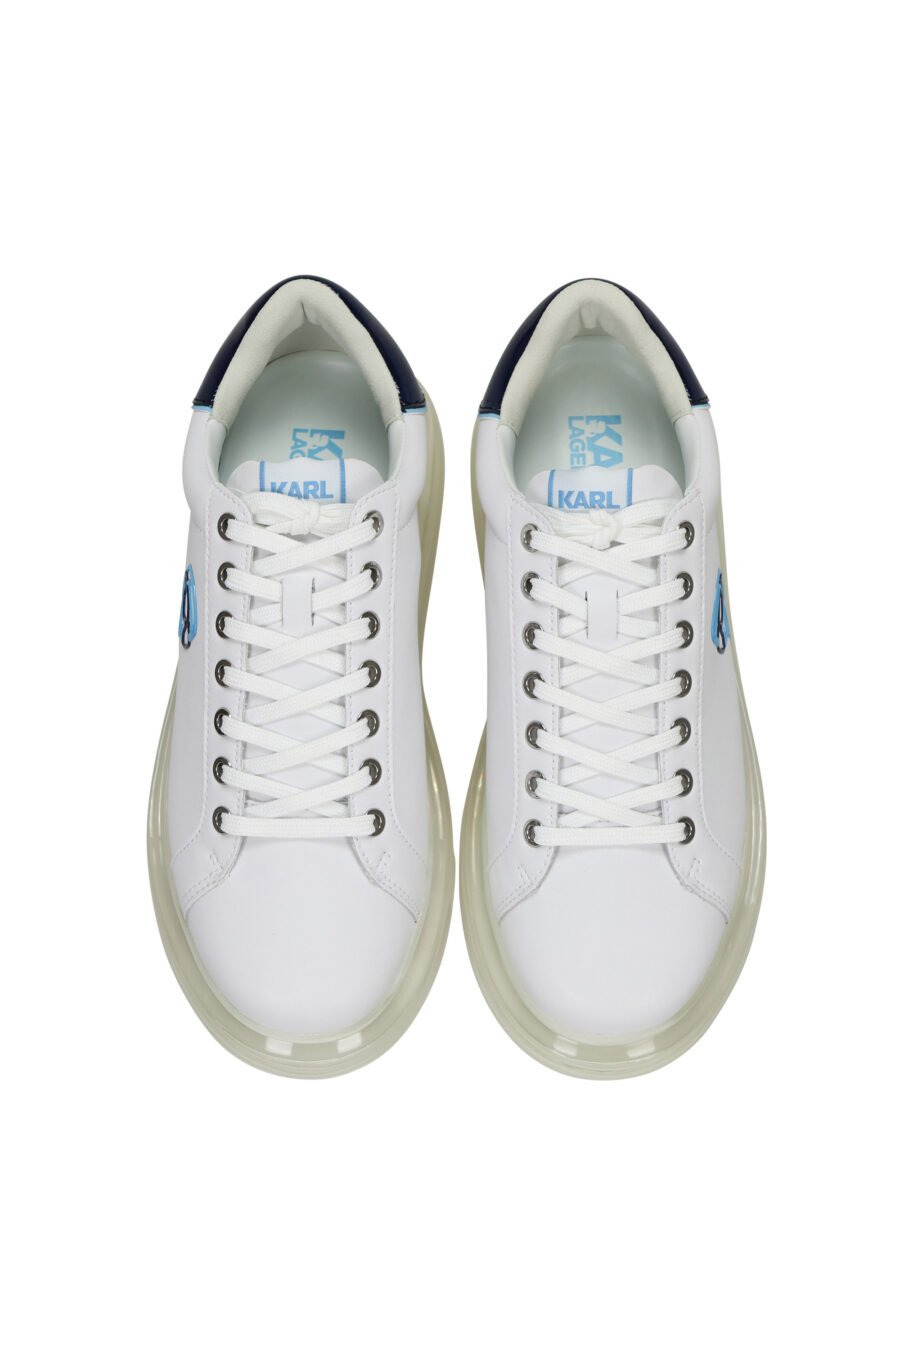 Zapatillas blancas "kapri fushion" con plataforma transparente y minilogo en contorno azul - 5059529396144 4